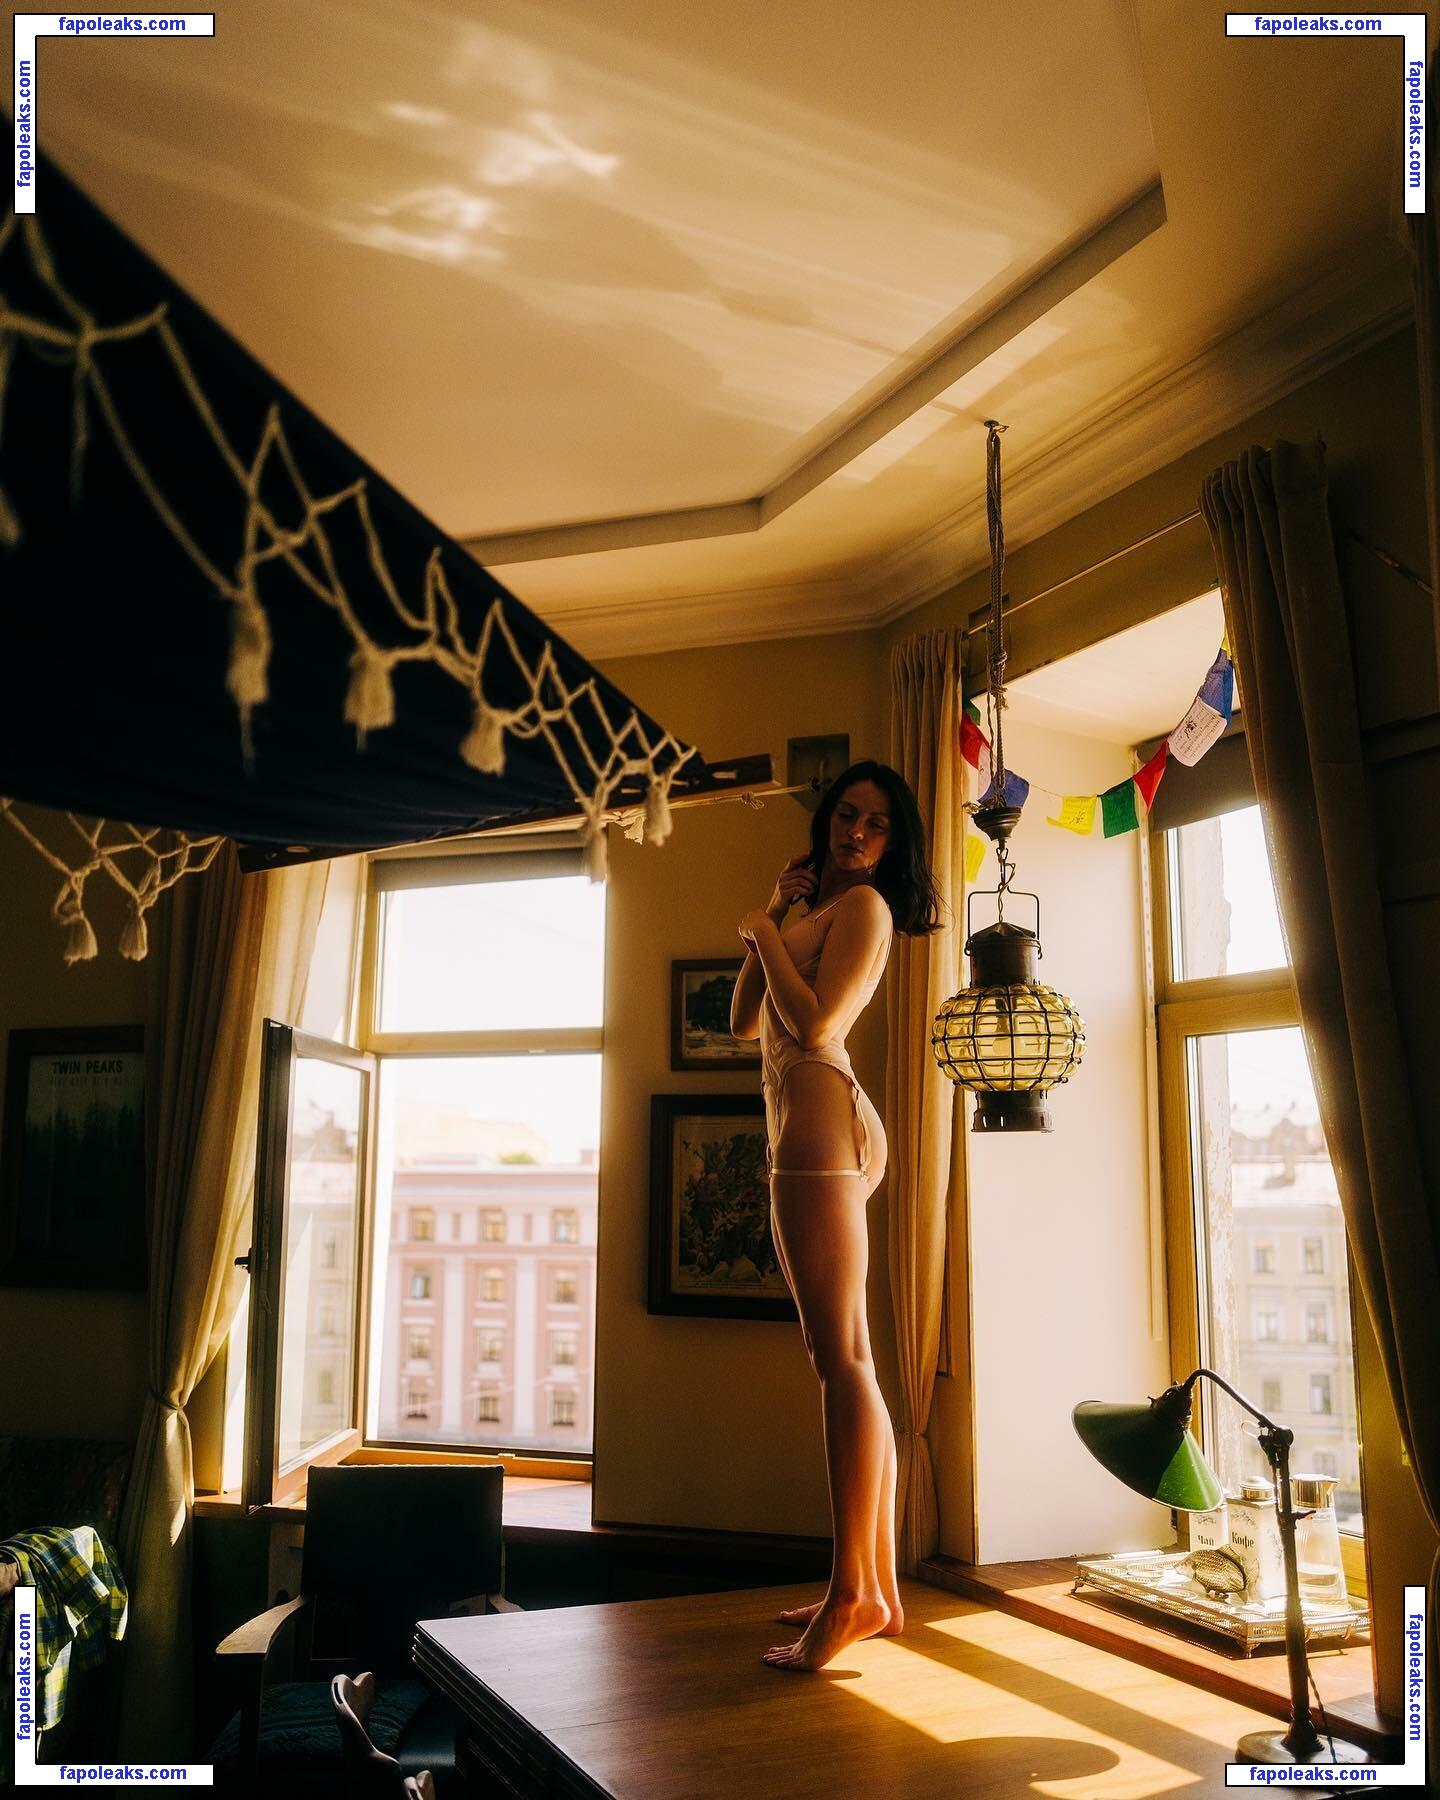 katya_mozhina / Katenka Mozhina / katyamozhina nude photo #0078 from OnlyFans